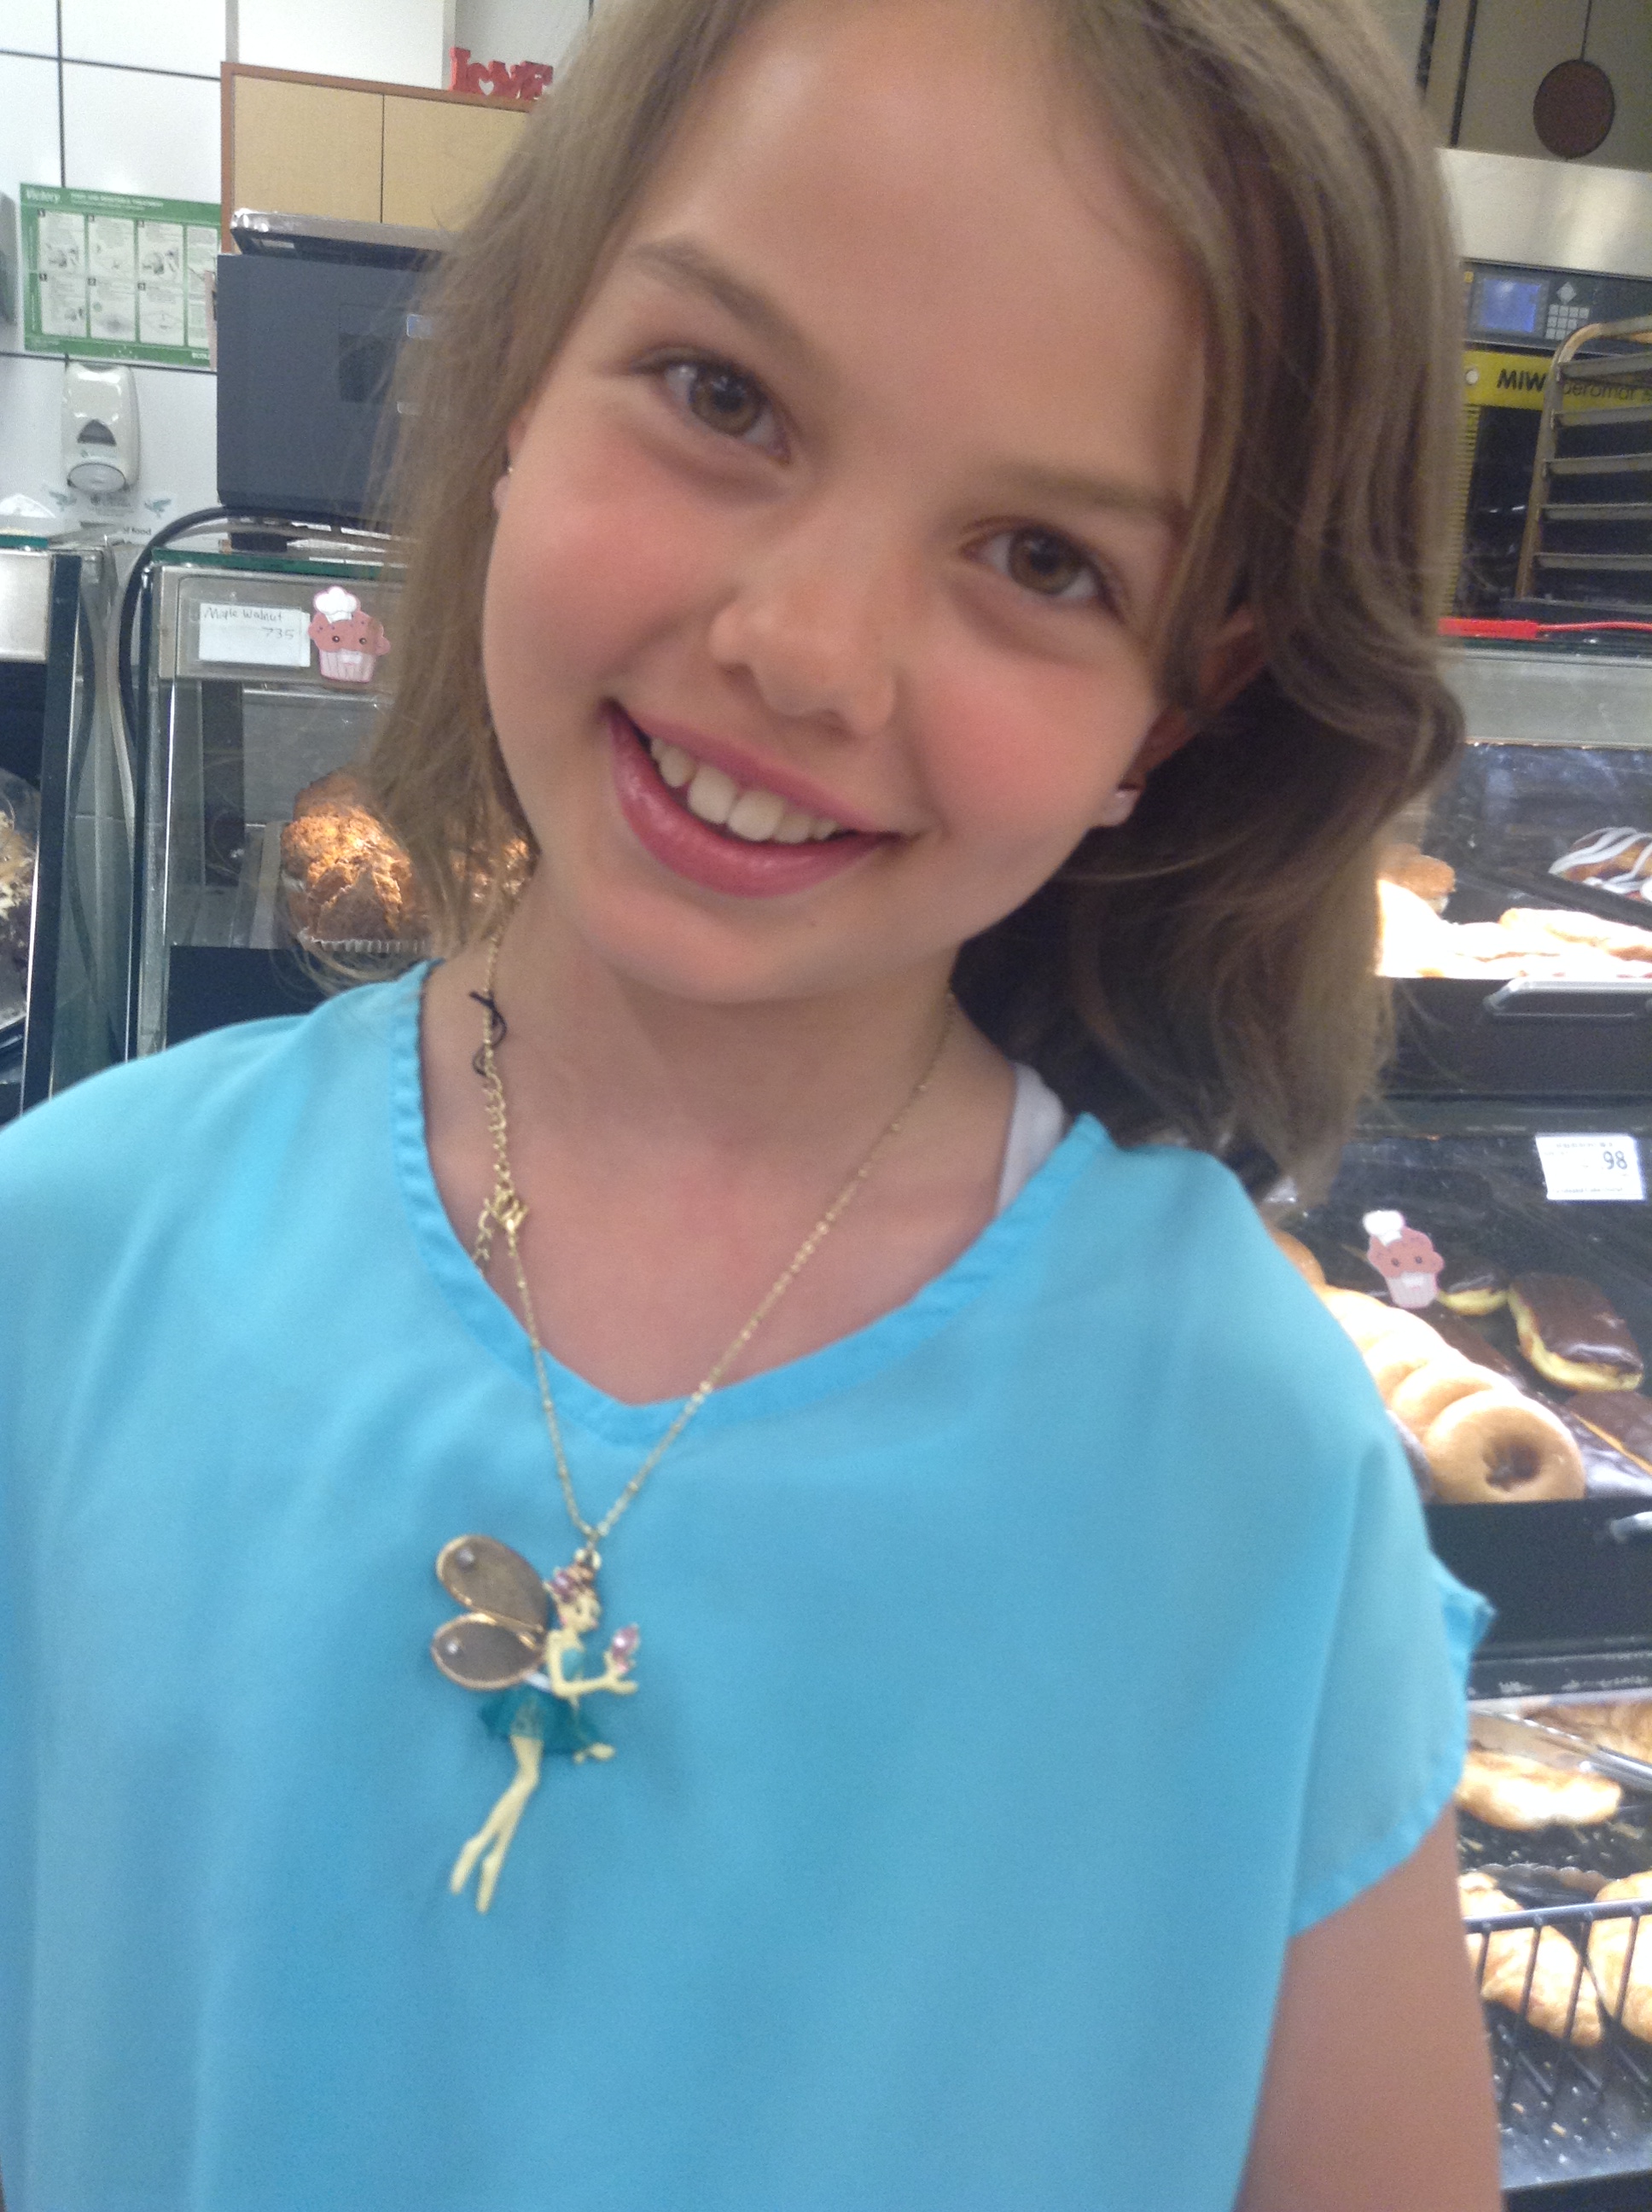 Rachel with her fairy necklace grade 5 homeschool